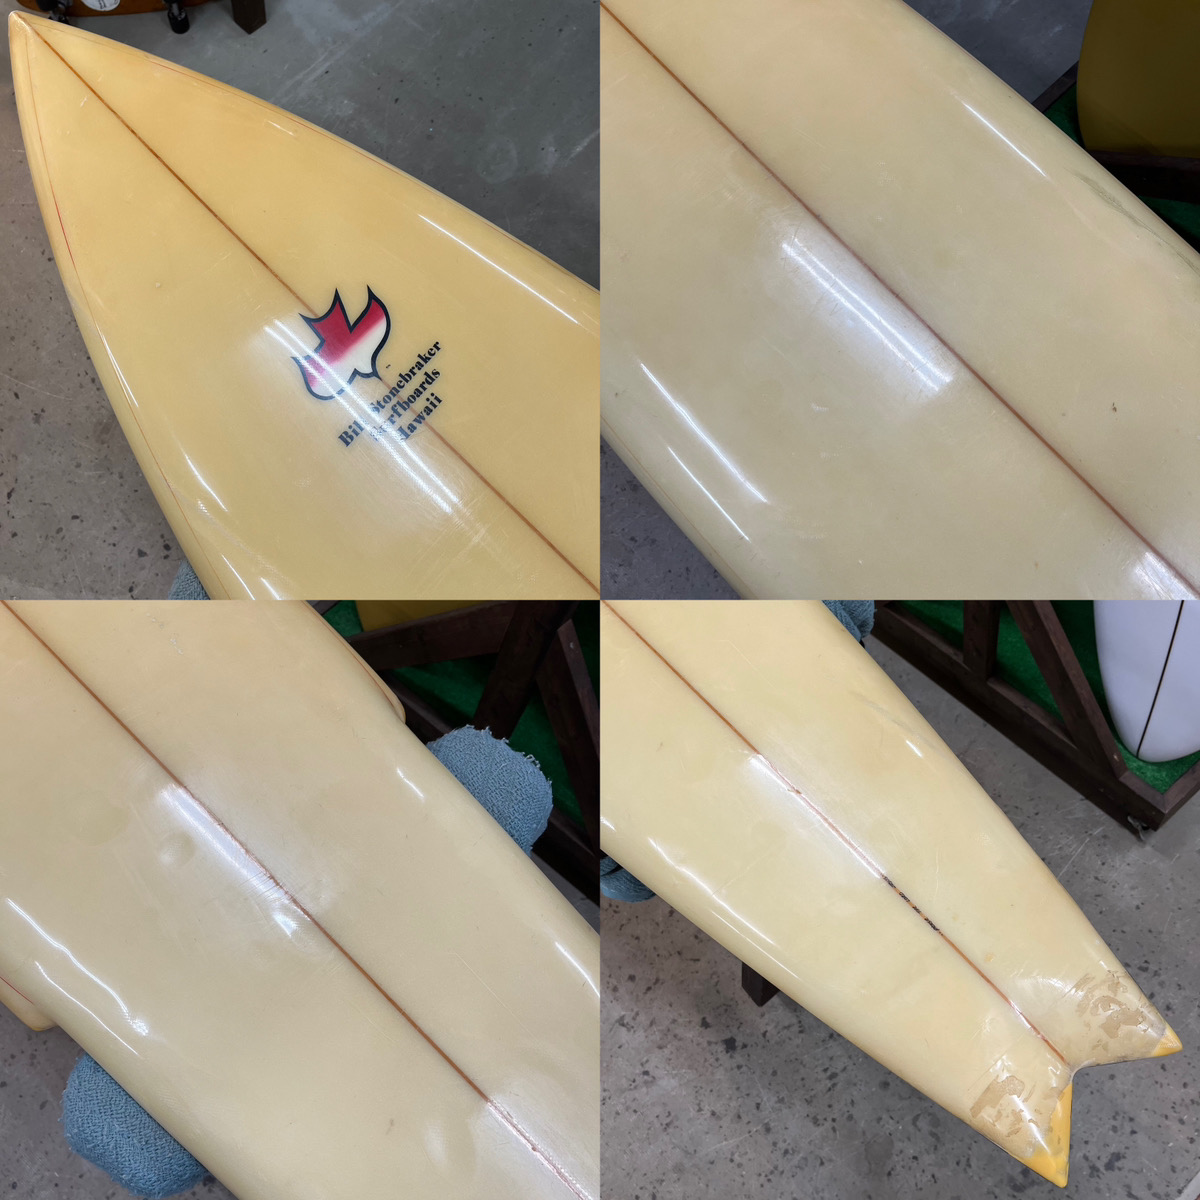 Bill Stonebraker Surfboards  / 70`s Custom STINGER 7`0